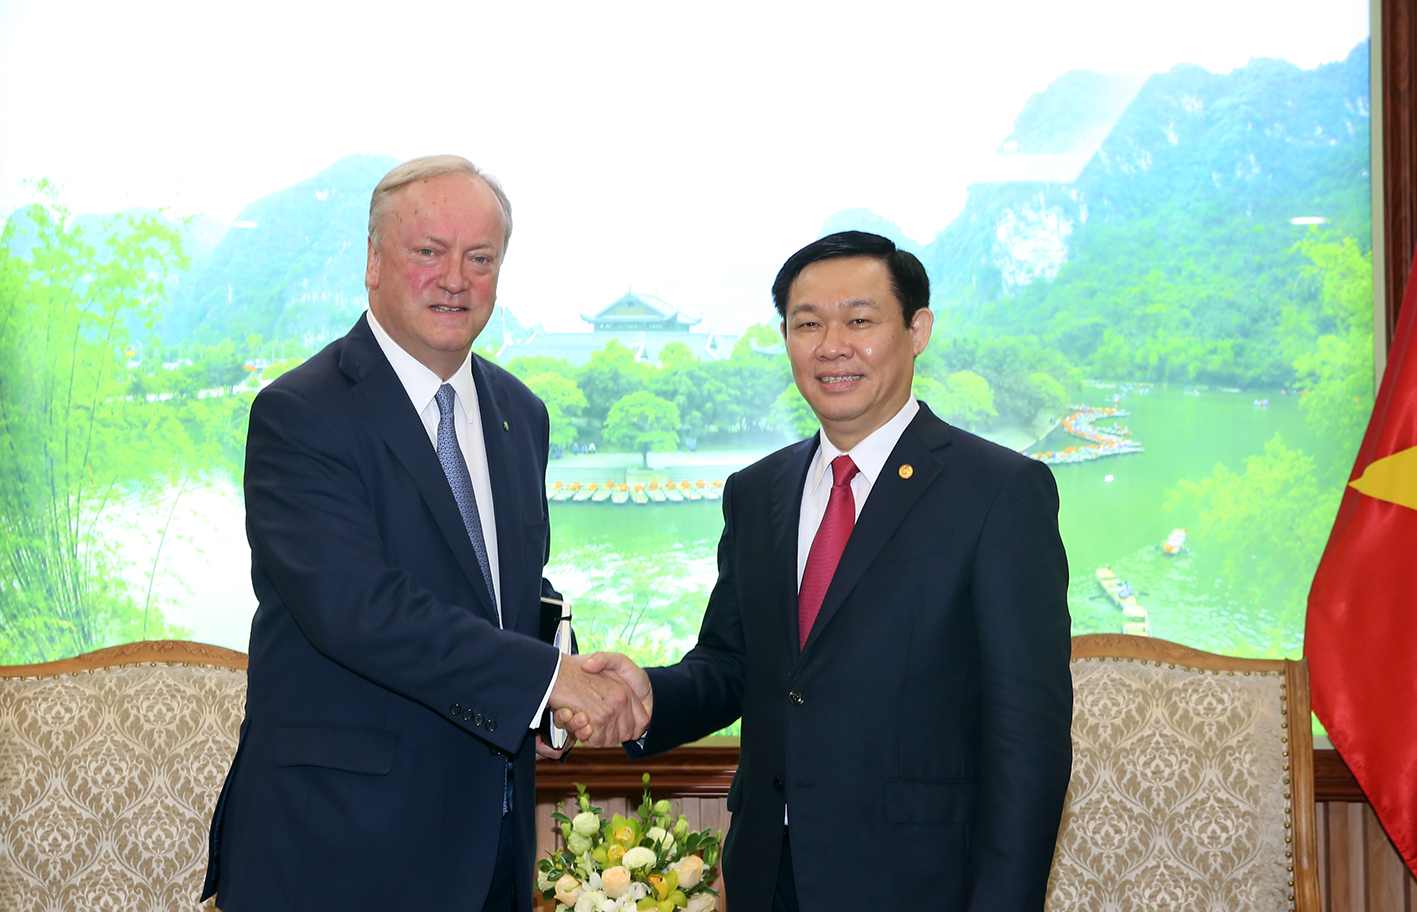 Phó Thủ tướng Vương Đình Huệ và ông David Cruiskshank, Chủ tịch Hãng kiểm toán Deloitte toàn cầu - Ảnh: VGP/Thành Chung